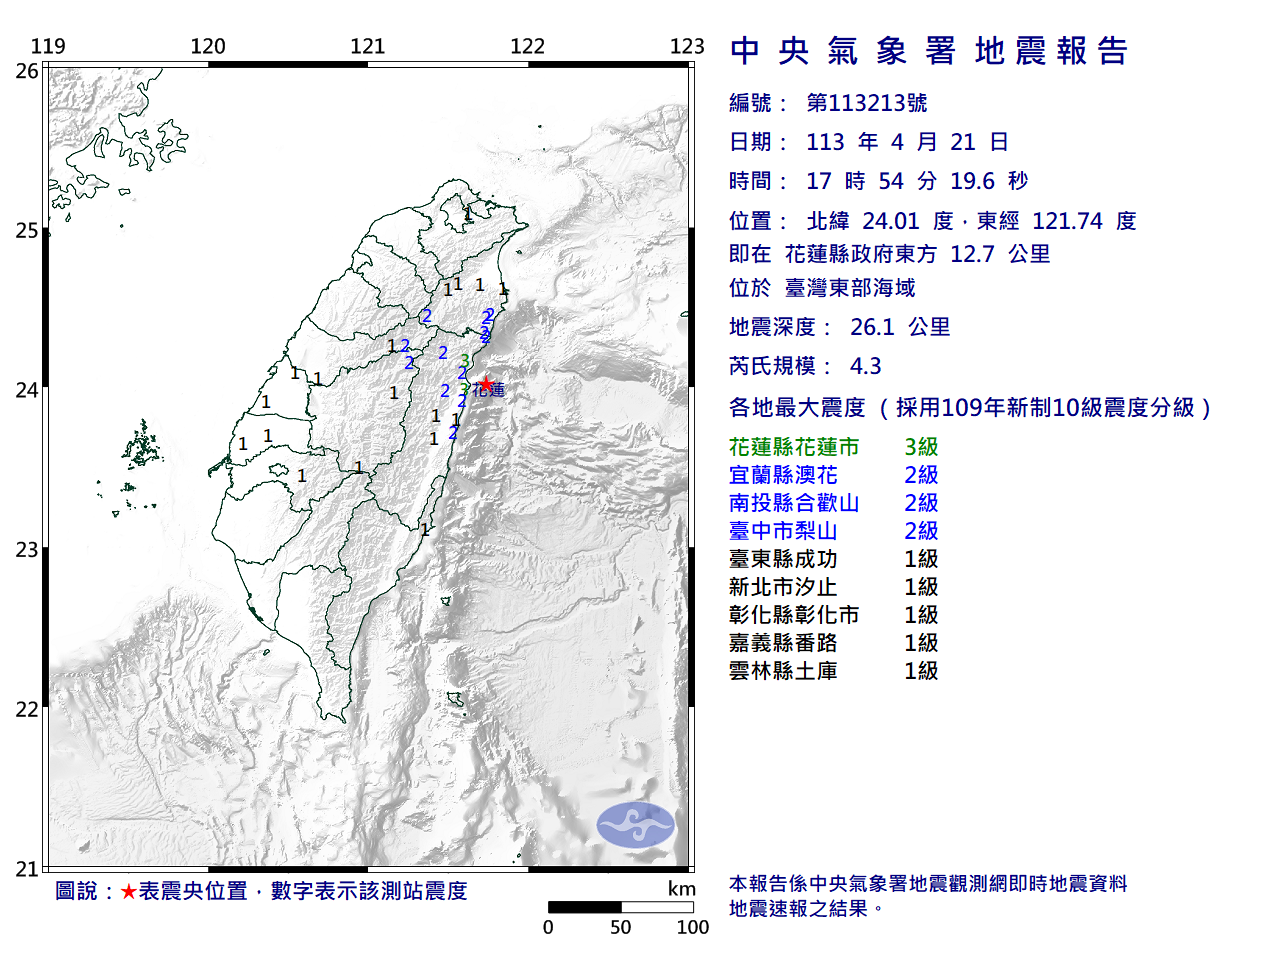 東部海域地震規模4.3  最大震度花蓮3級